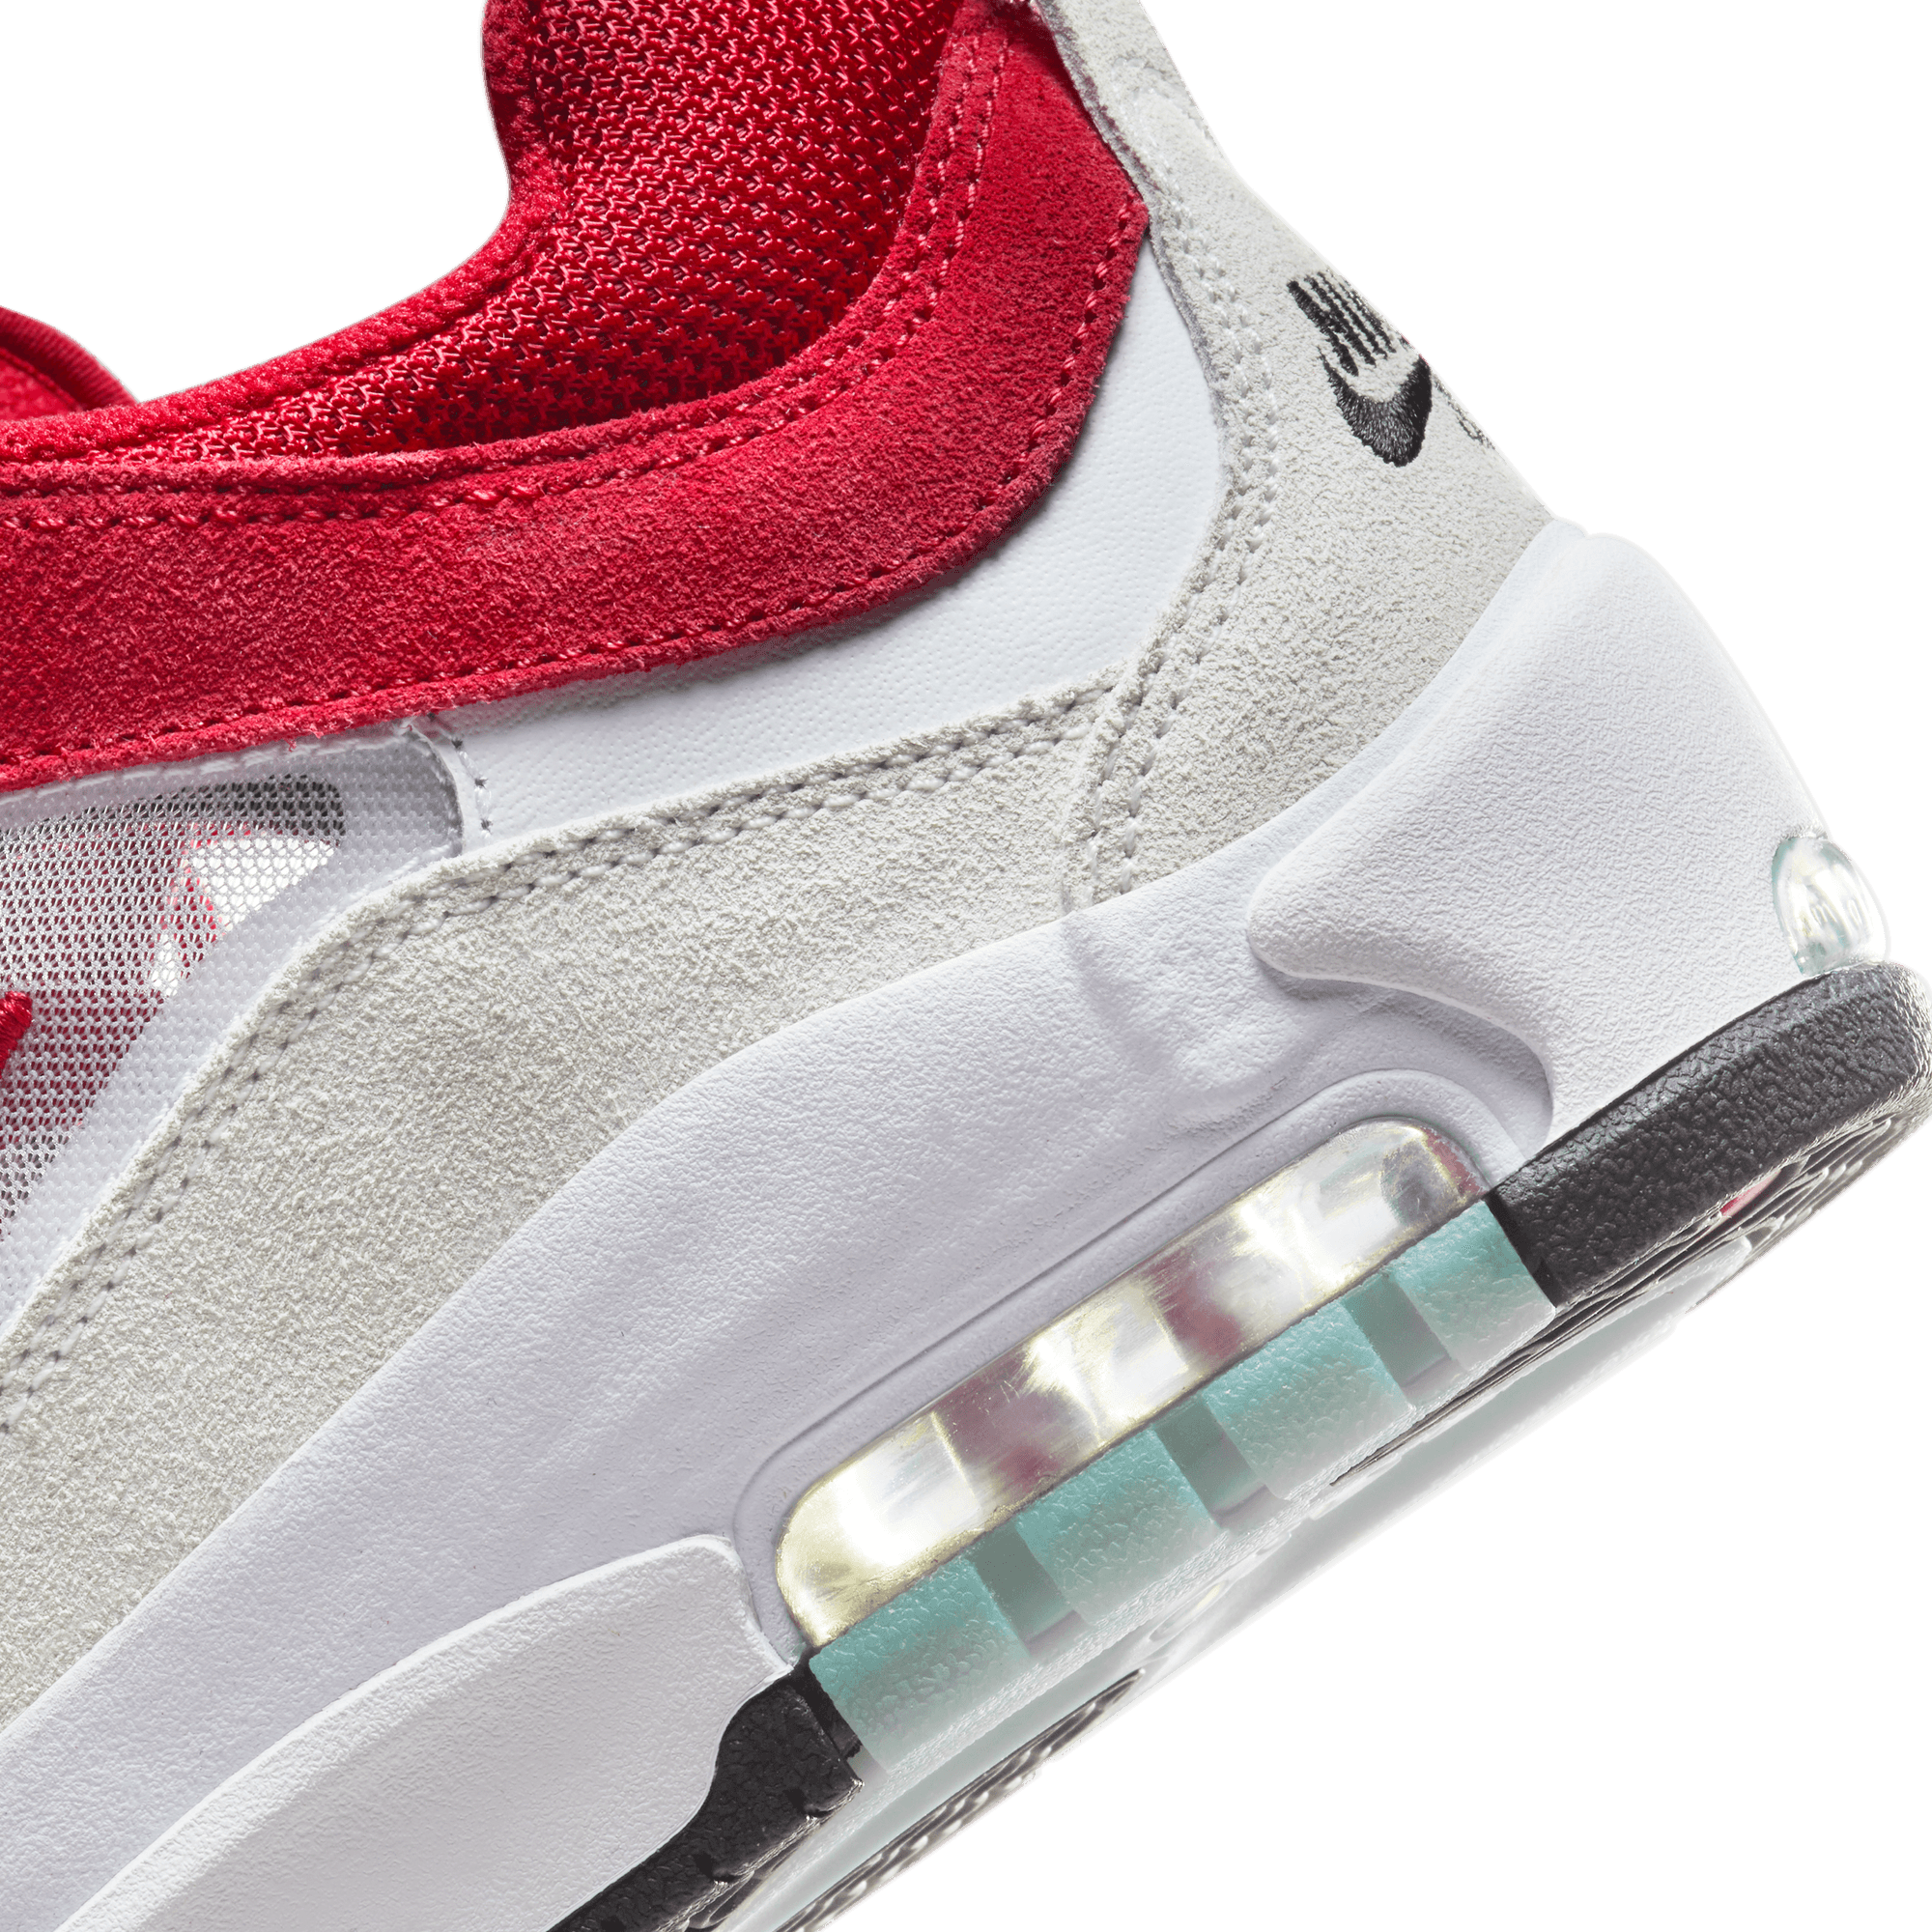 White/Varsity Red Air Max Ishod Wair Nike SB Skate Shoe Detail